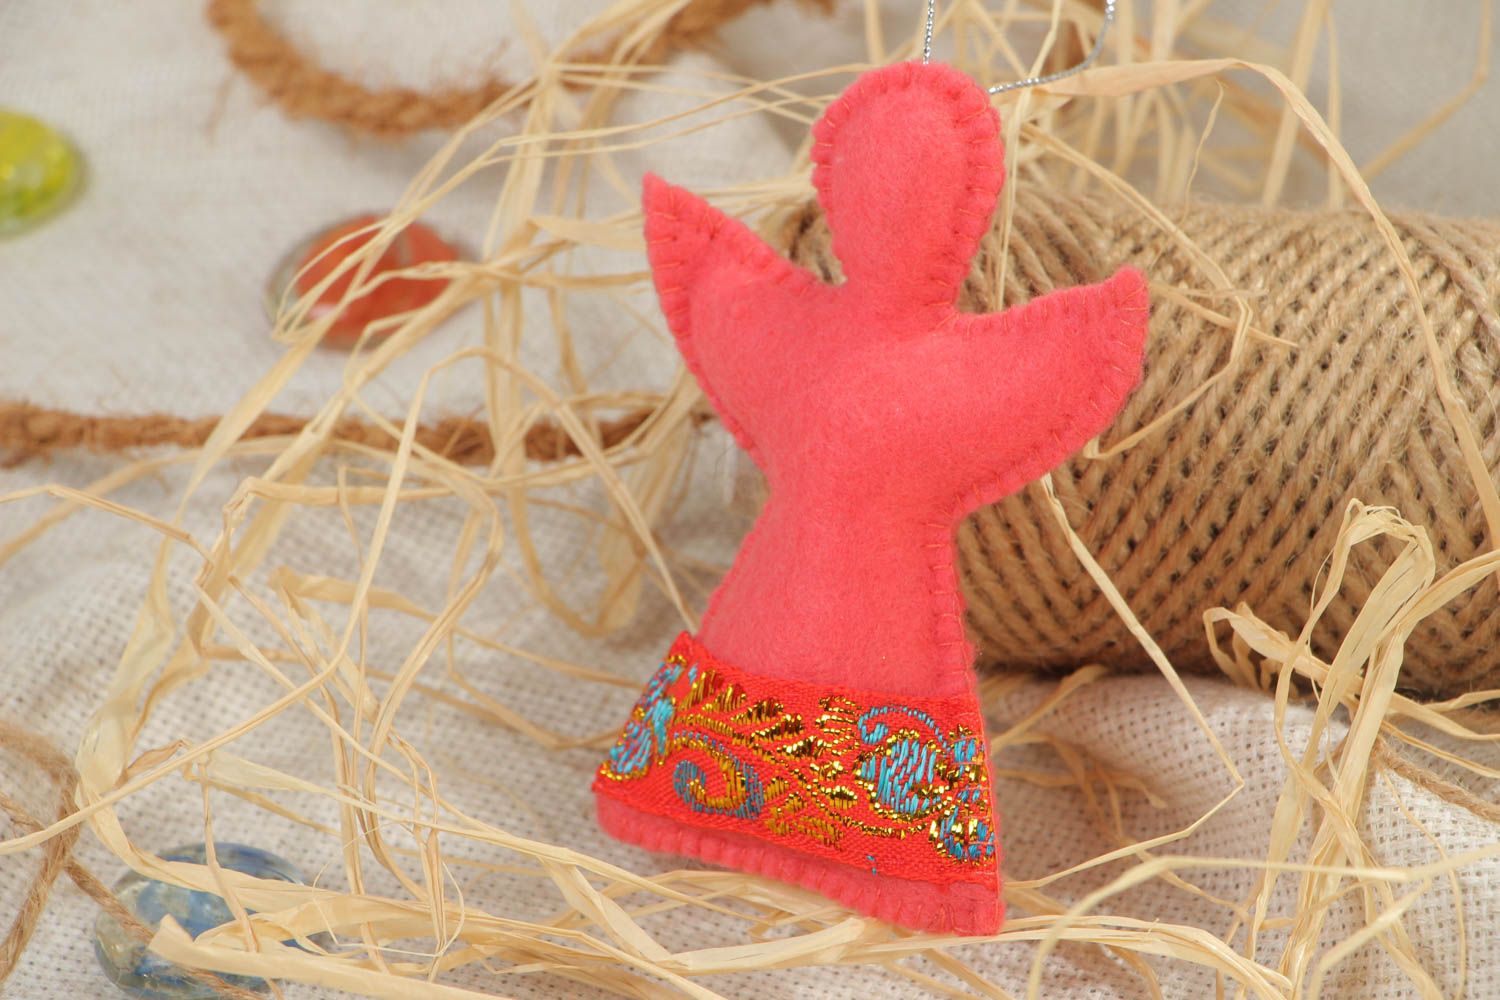 Rosa handmade Deko Anhänger aus Filz in Form vom Engel wunderschön foto 1